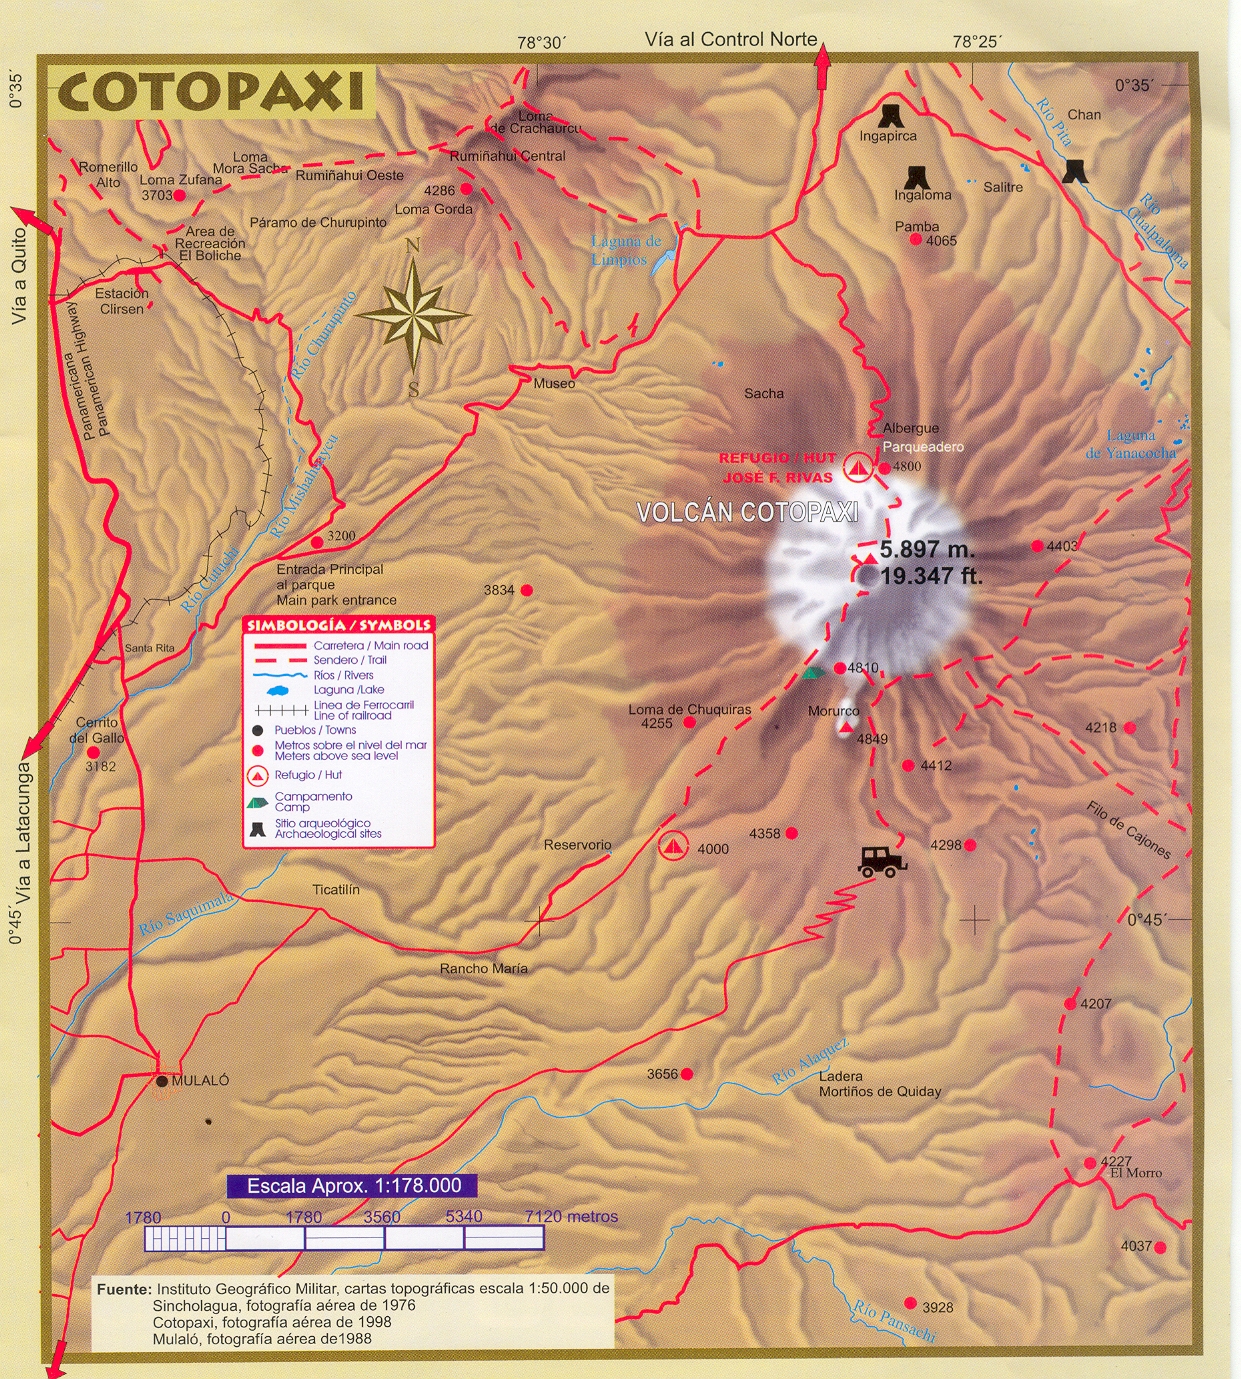 Cotopaxi volcano - Ecuador - Blog about interesting places